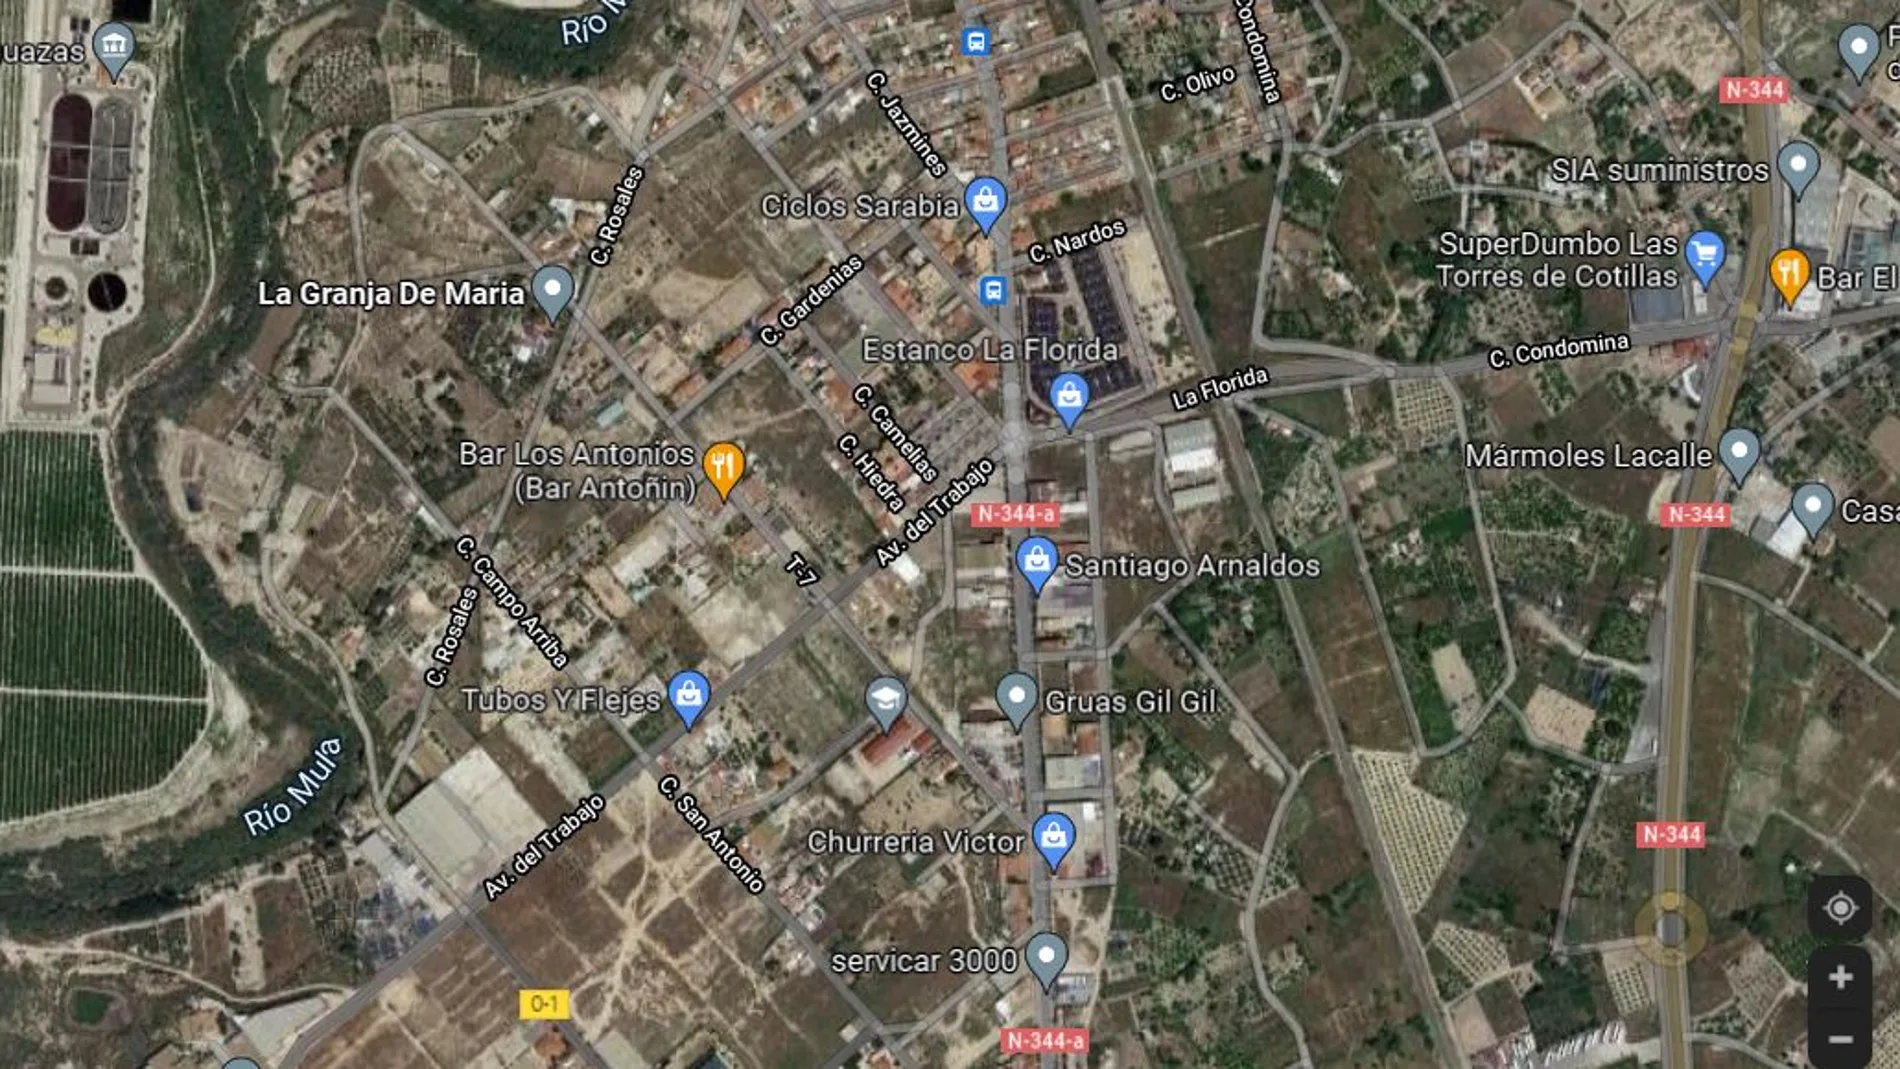 Imagen satélite del barrio en el que se ha producido la explosión